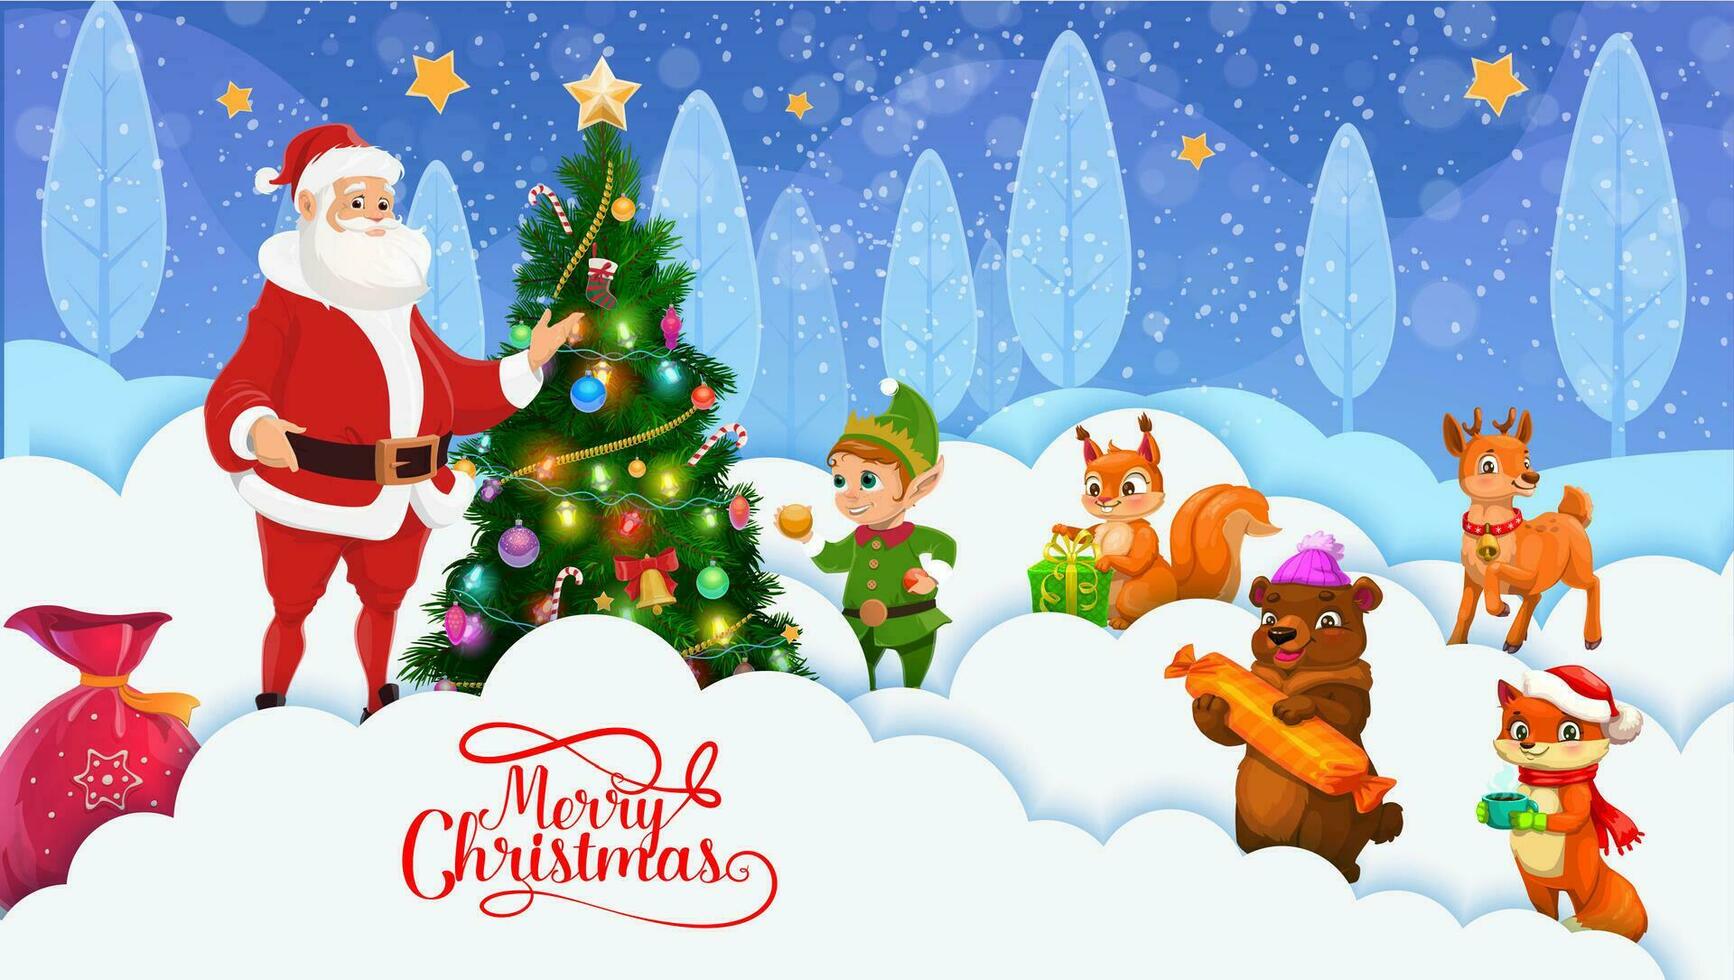 Navidad papel cortar dibujos animados Papa Noel y linda animales vector